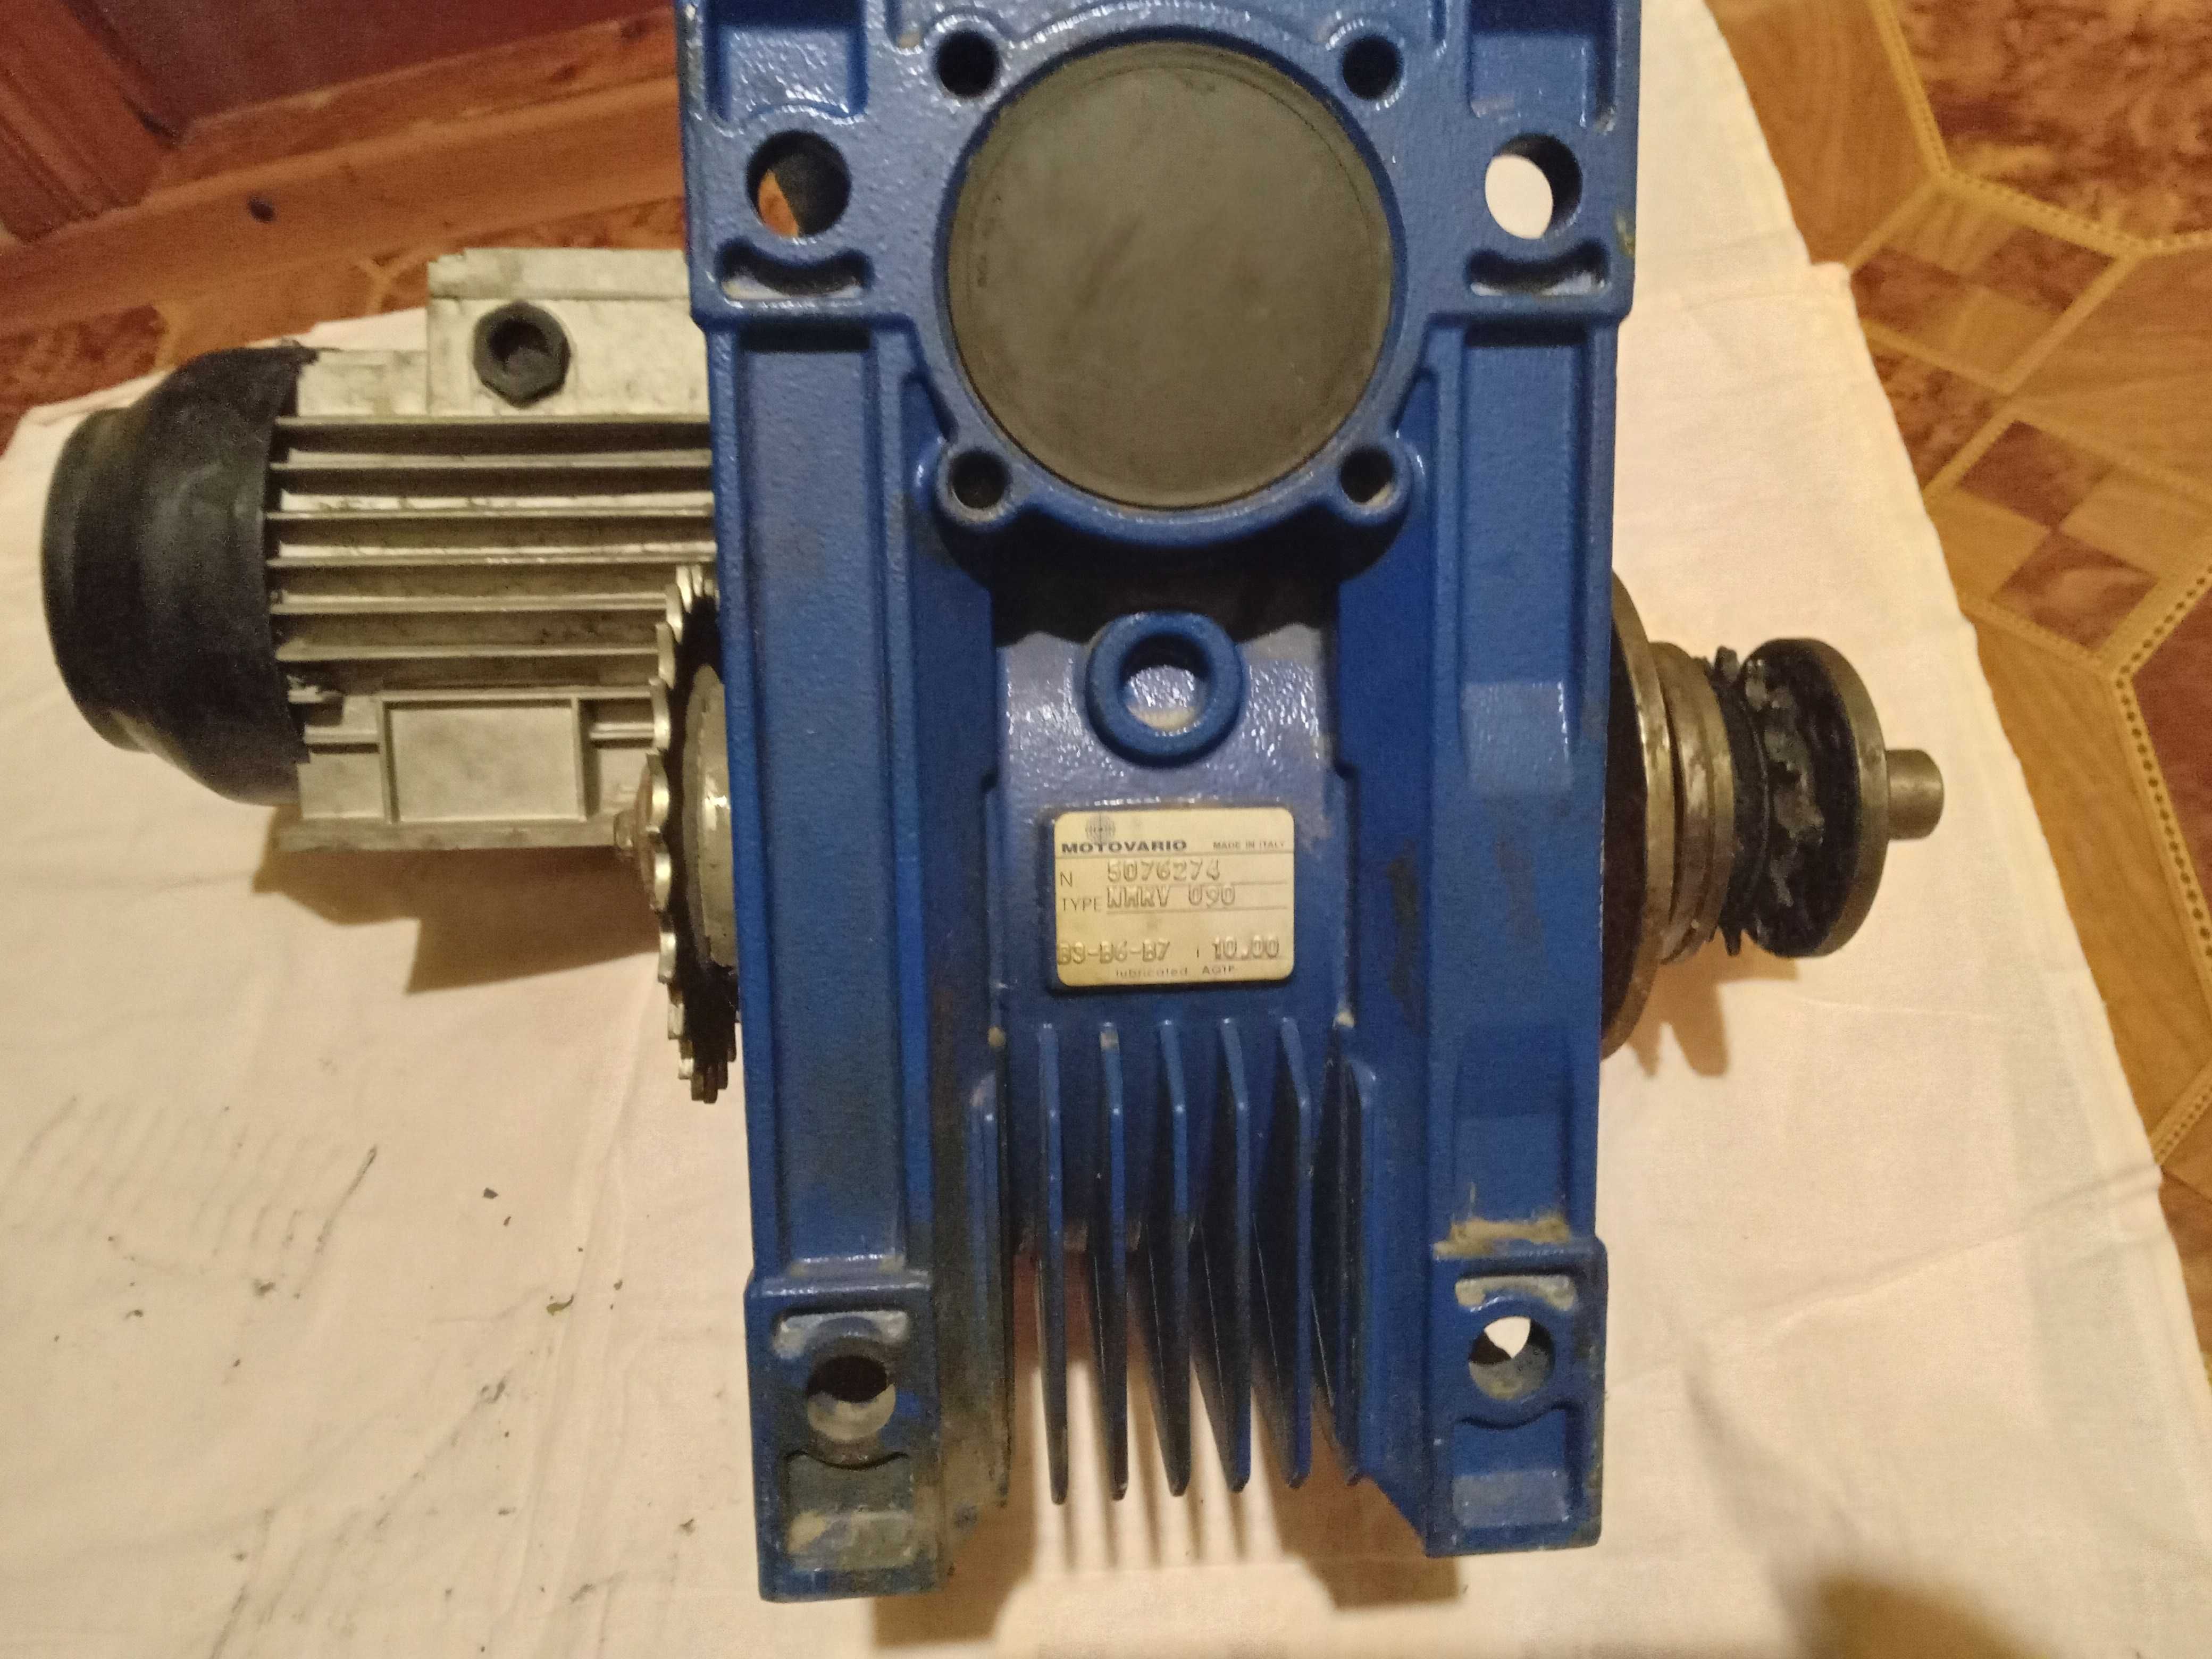 Недорого! Мотор редуктор NMRV-040 и NMRV-090, Италия